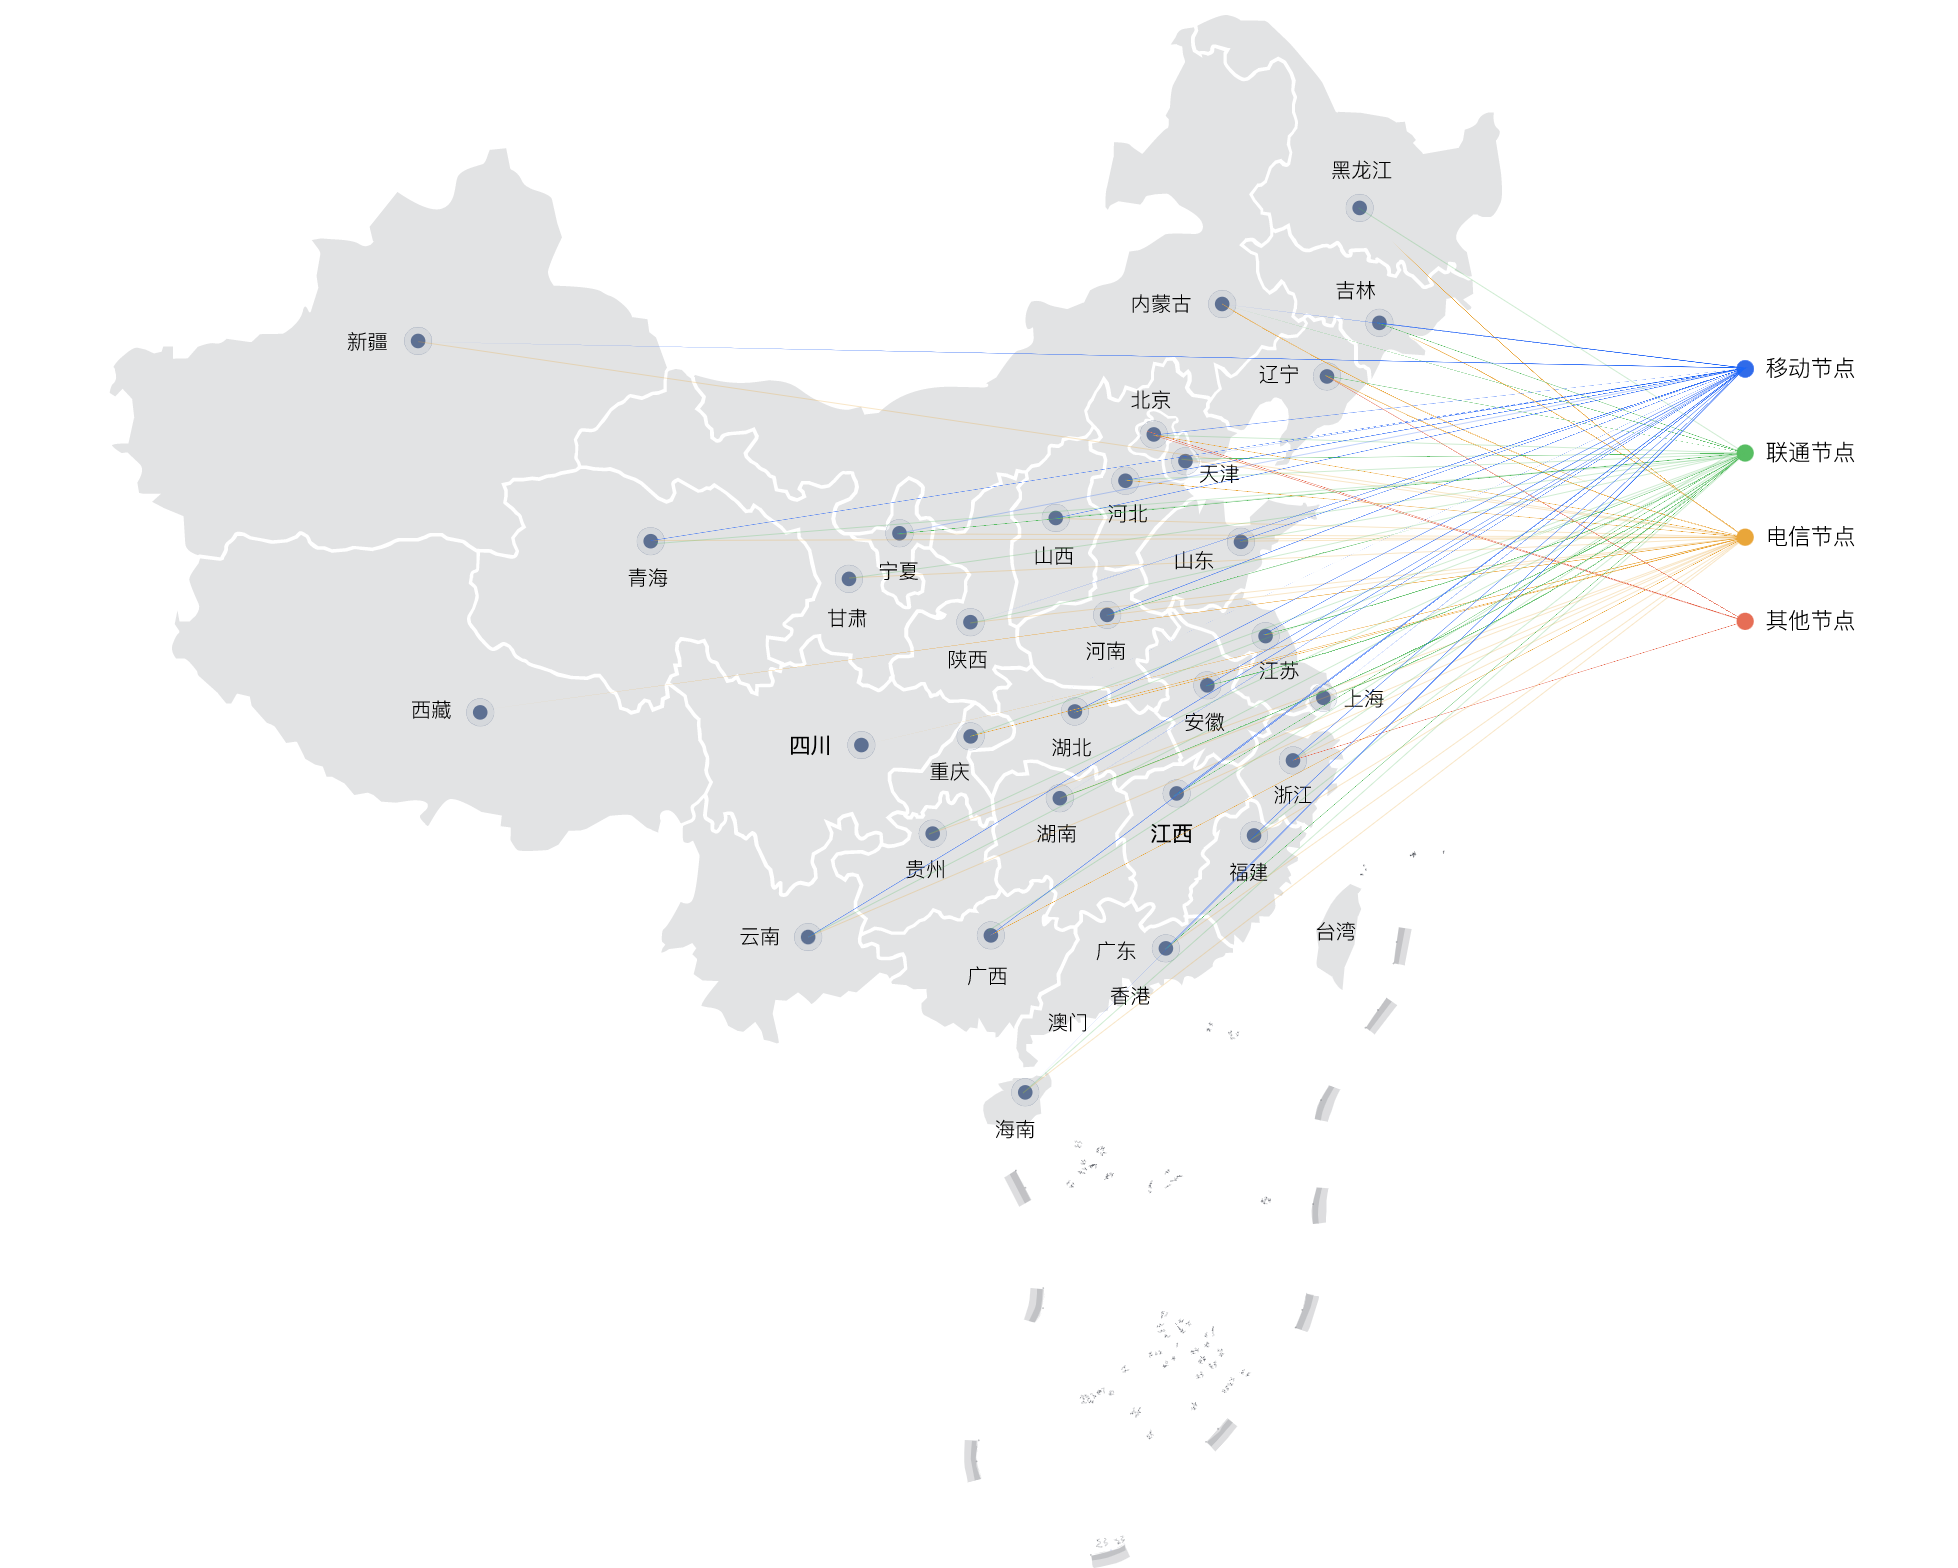 CDN-Node Distribution Map-new.png